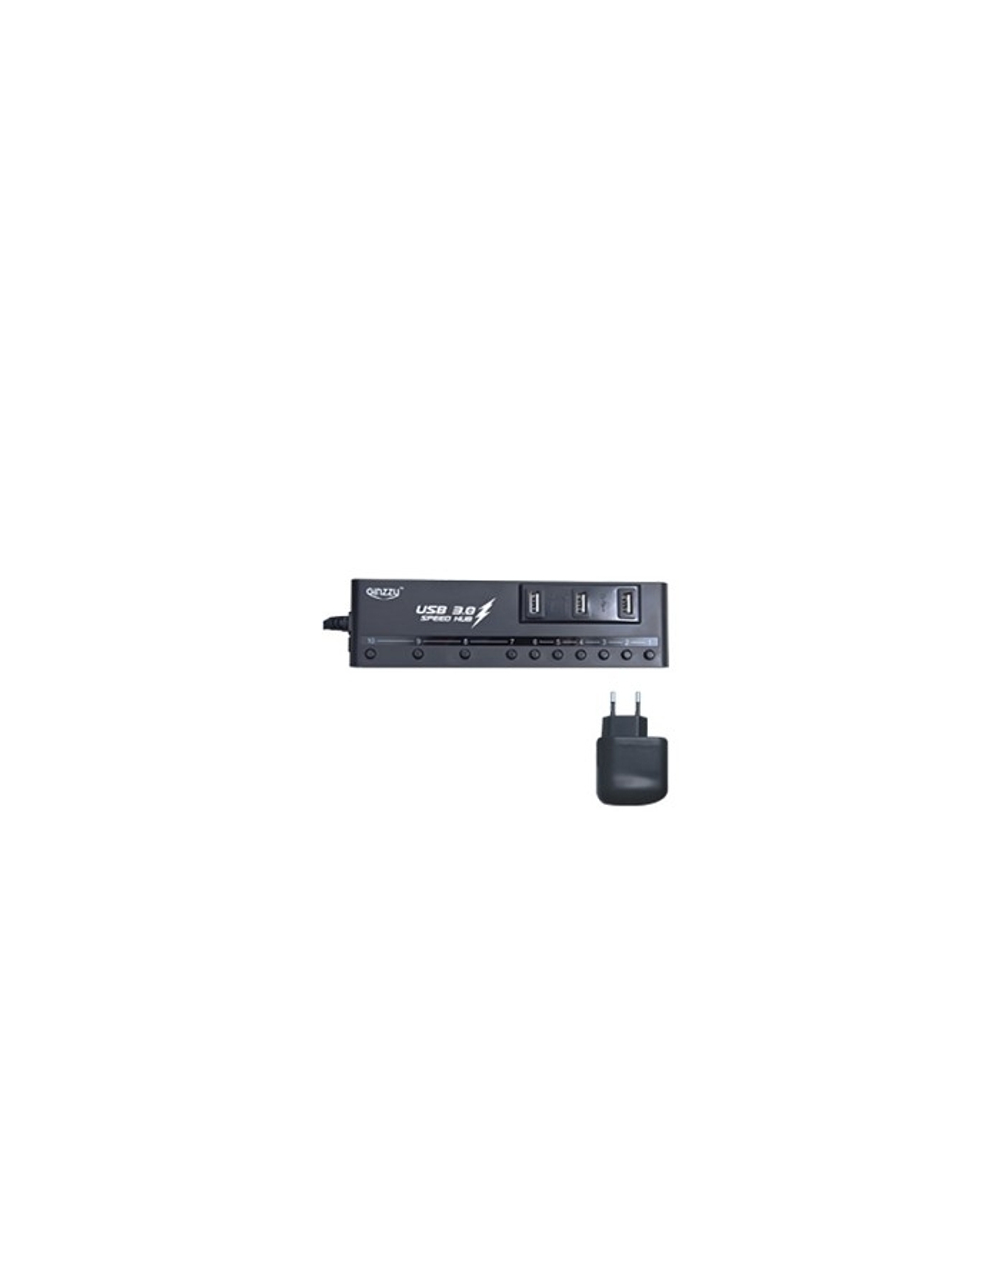 HUB GR-380UAB Ginzzu USB 3.0 10 port + adapter